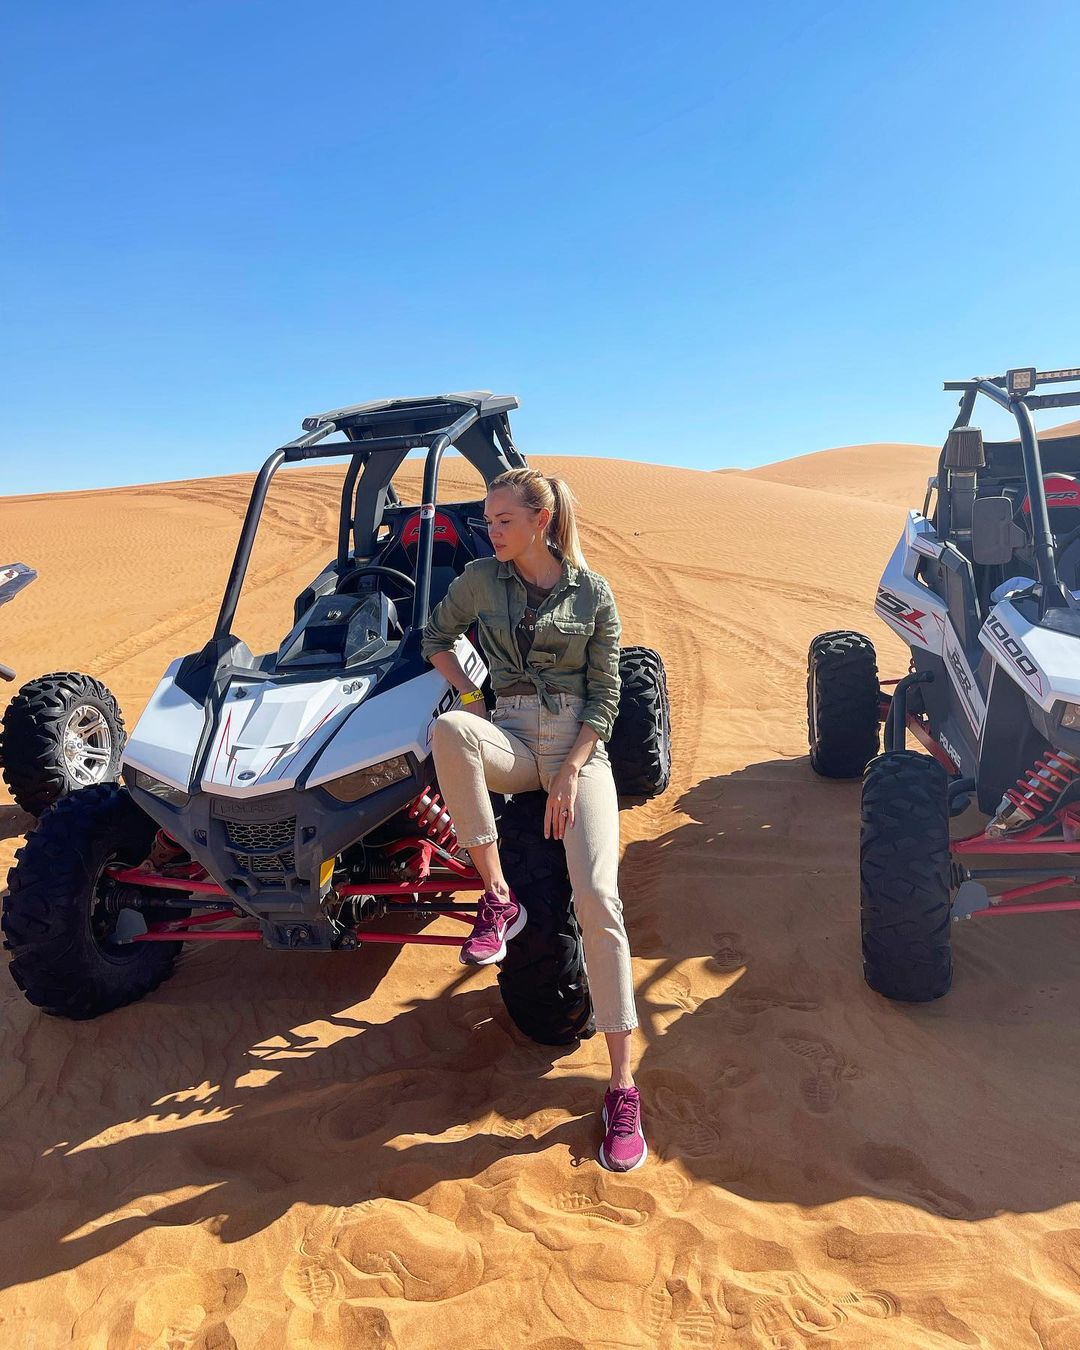 Сафари и фото в пустыне: Анастасия Масюткина, Анна Закусило и Вита Кин отдыхают в ОАЭ